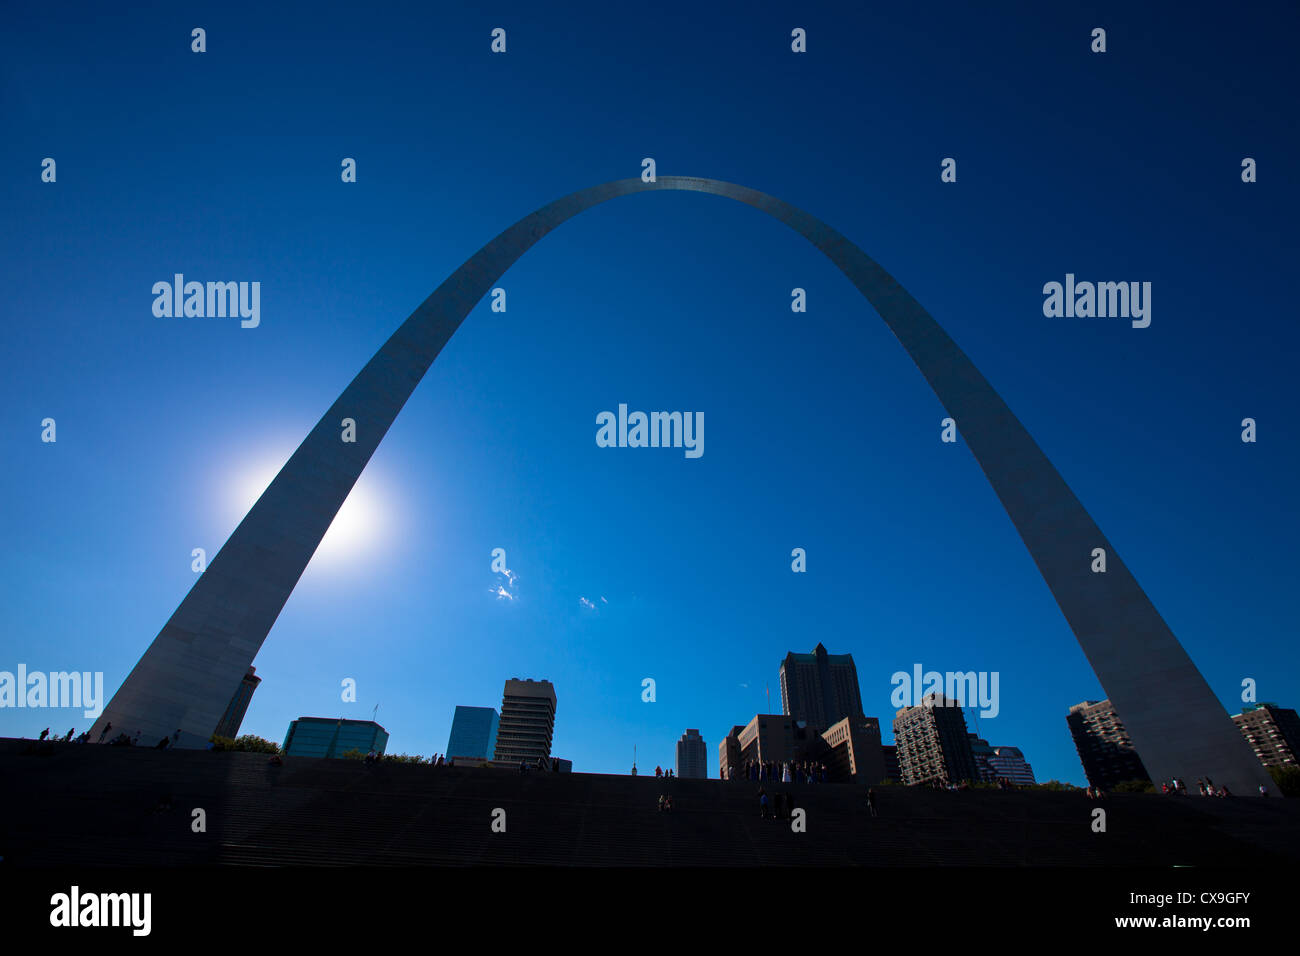 Das berühmte St. Louis Arch erhebt sich hoch über der Innenstadt und des Mississippi River. Stockfoto